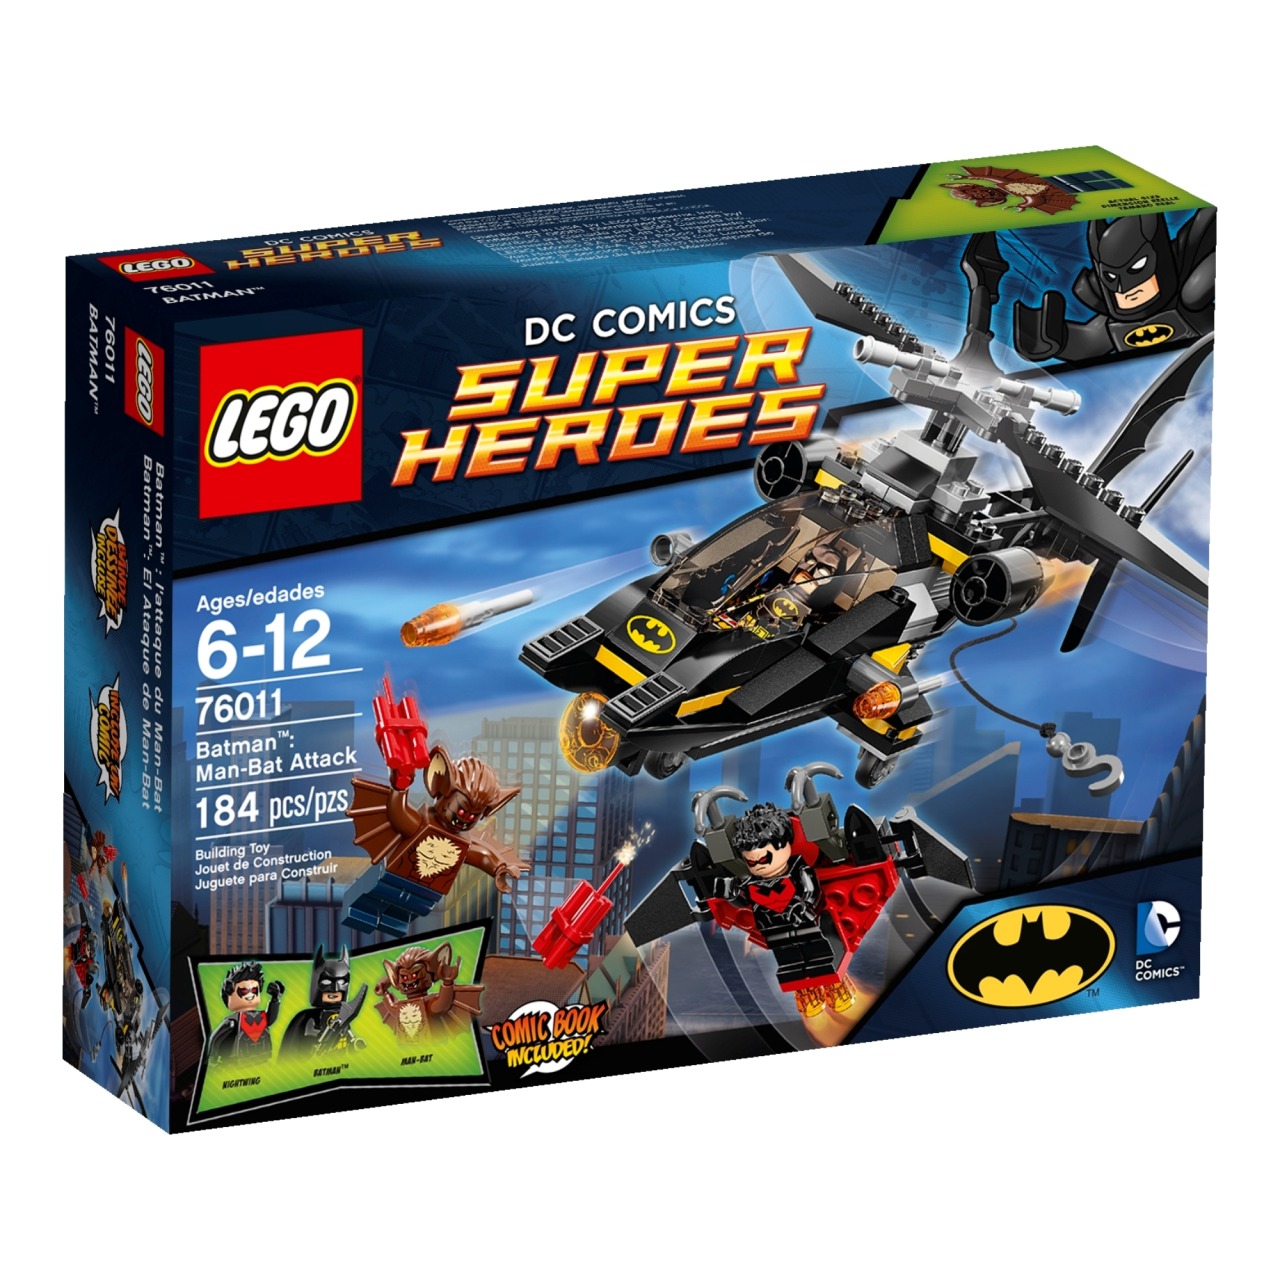 Lego Minifigures Lego Dc Comics Super Heroes 2014 Sets